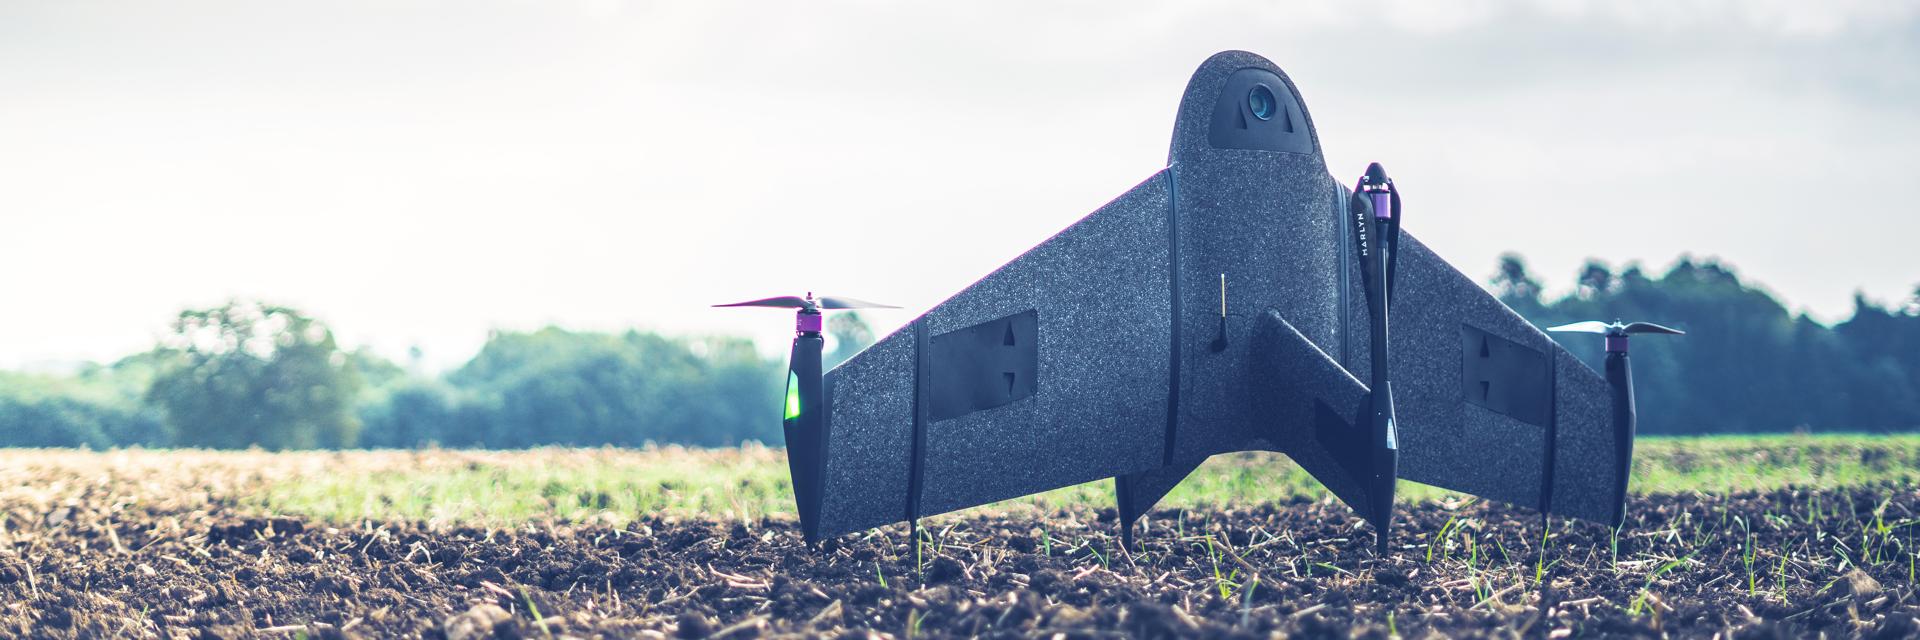 Un drone d'arpentage imprimé en 3D se tient debout sur un terrain boueux.